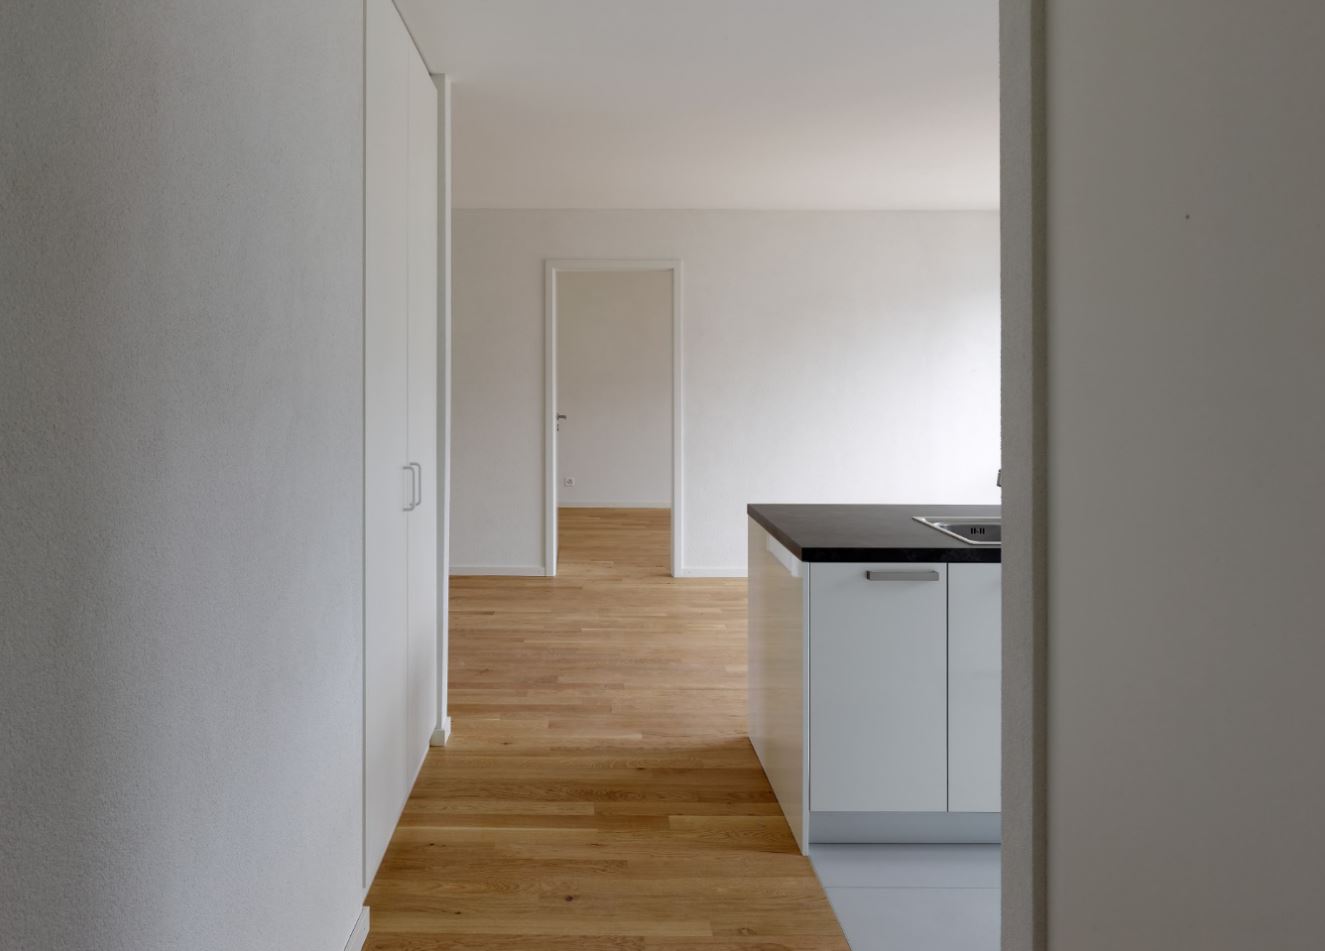 TRIBU : Appartements neufs de standing au Mont-sur-Lausanne